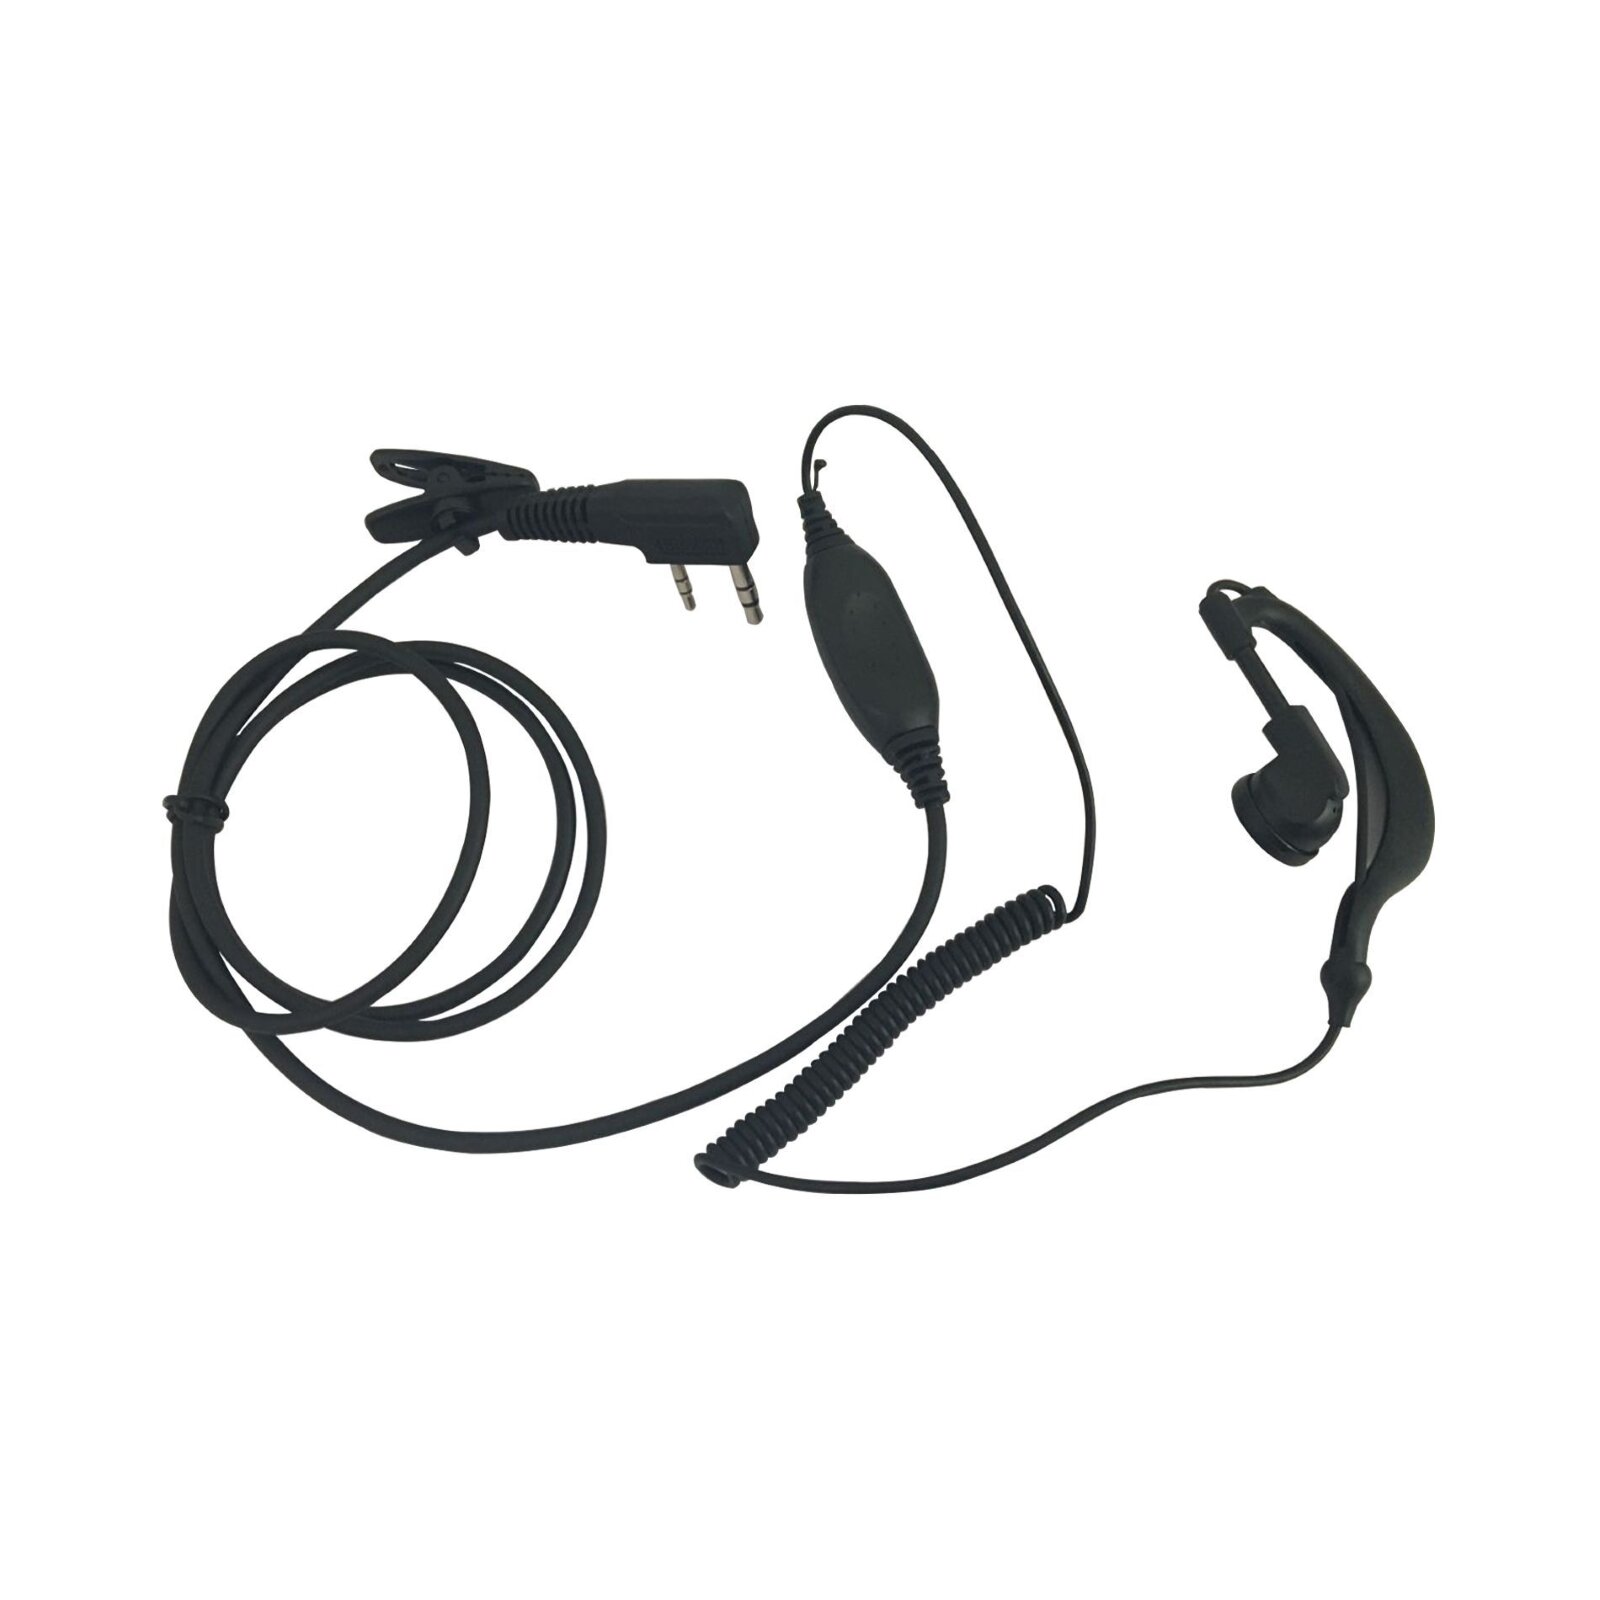 Power Acoustics Ecouteur In-Ear pour talkie-walkie (HS 06) : photo 1